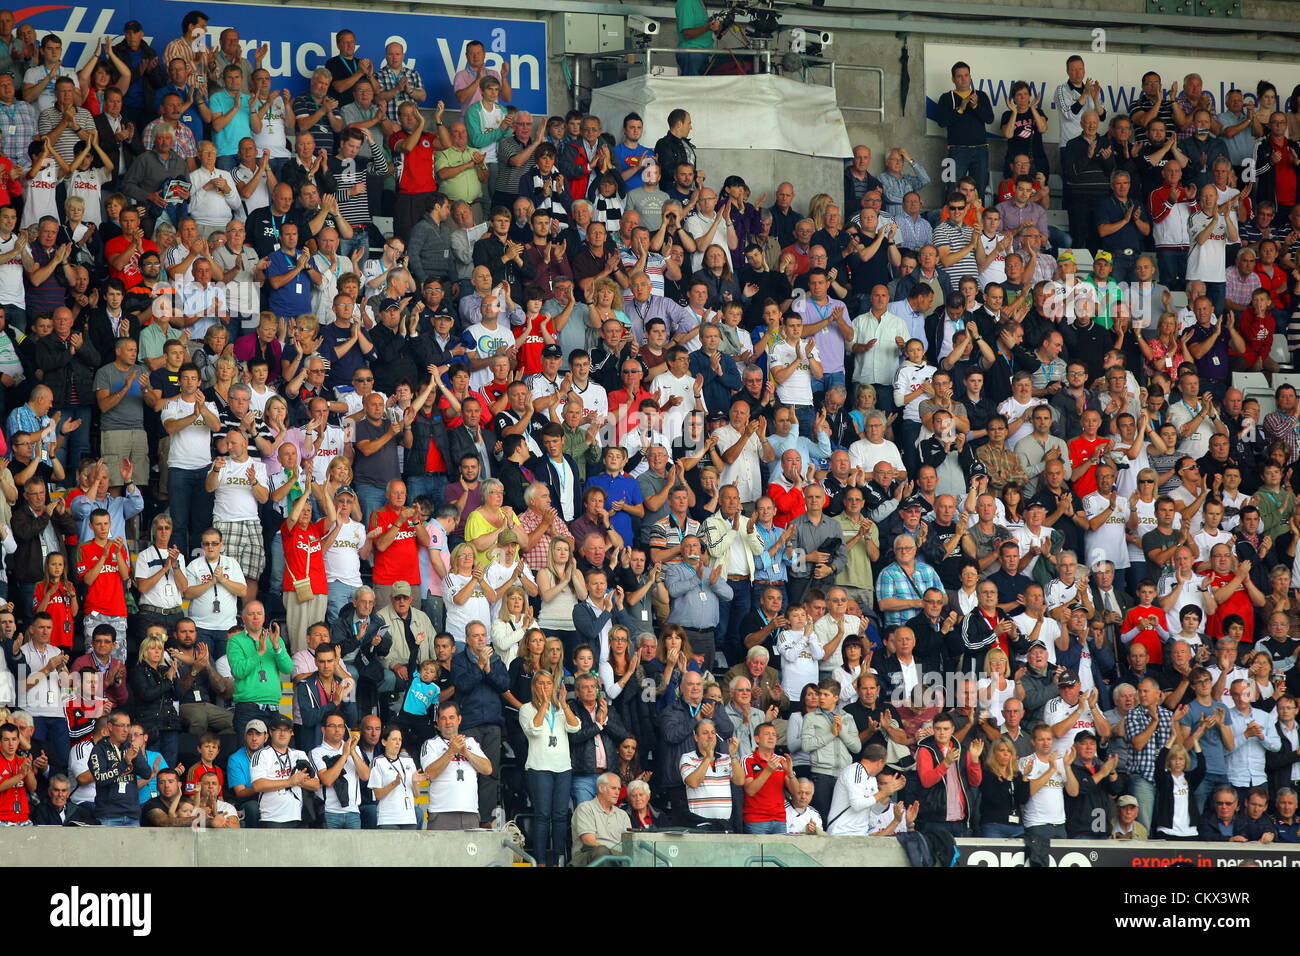 La FAO DEPORTES ESCRITORIO imagen Foto: Encantado de Swansea partidarios aclamando. Sábado 25 de agosto de 2012 Re: Barclay's Premier League Swansea City FC v West Ham en el Liberty Stadium, al sur de Gales. Foto de stock